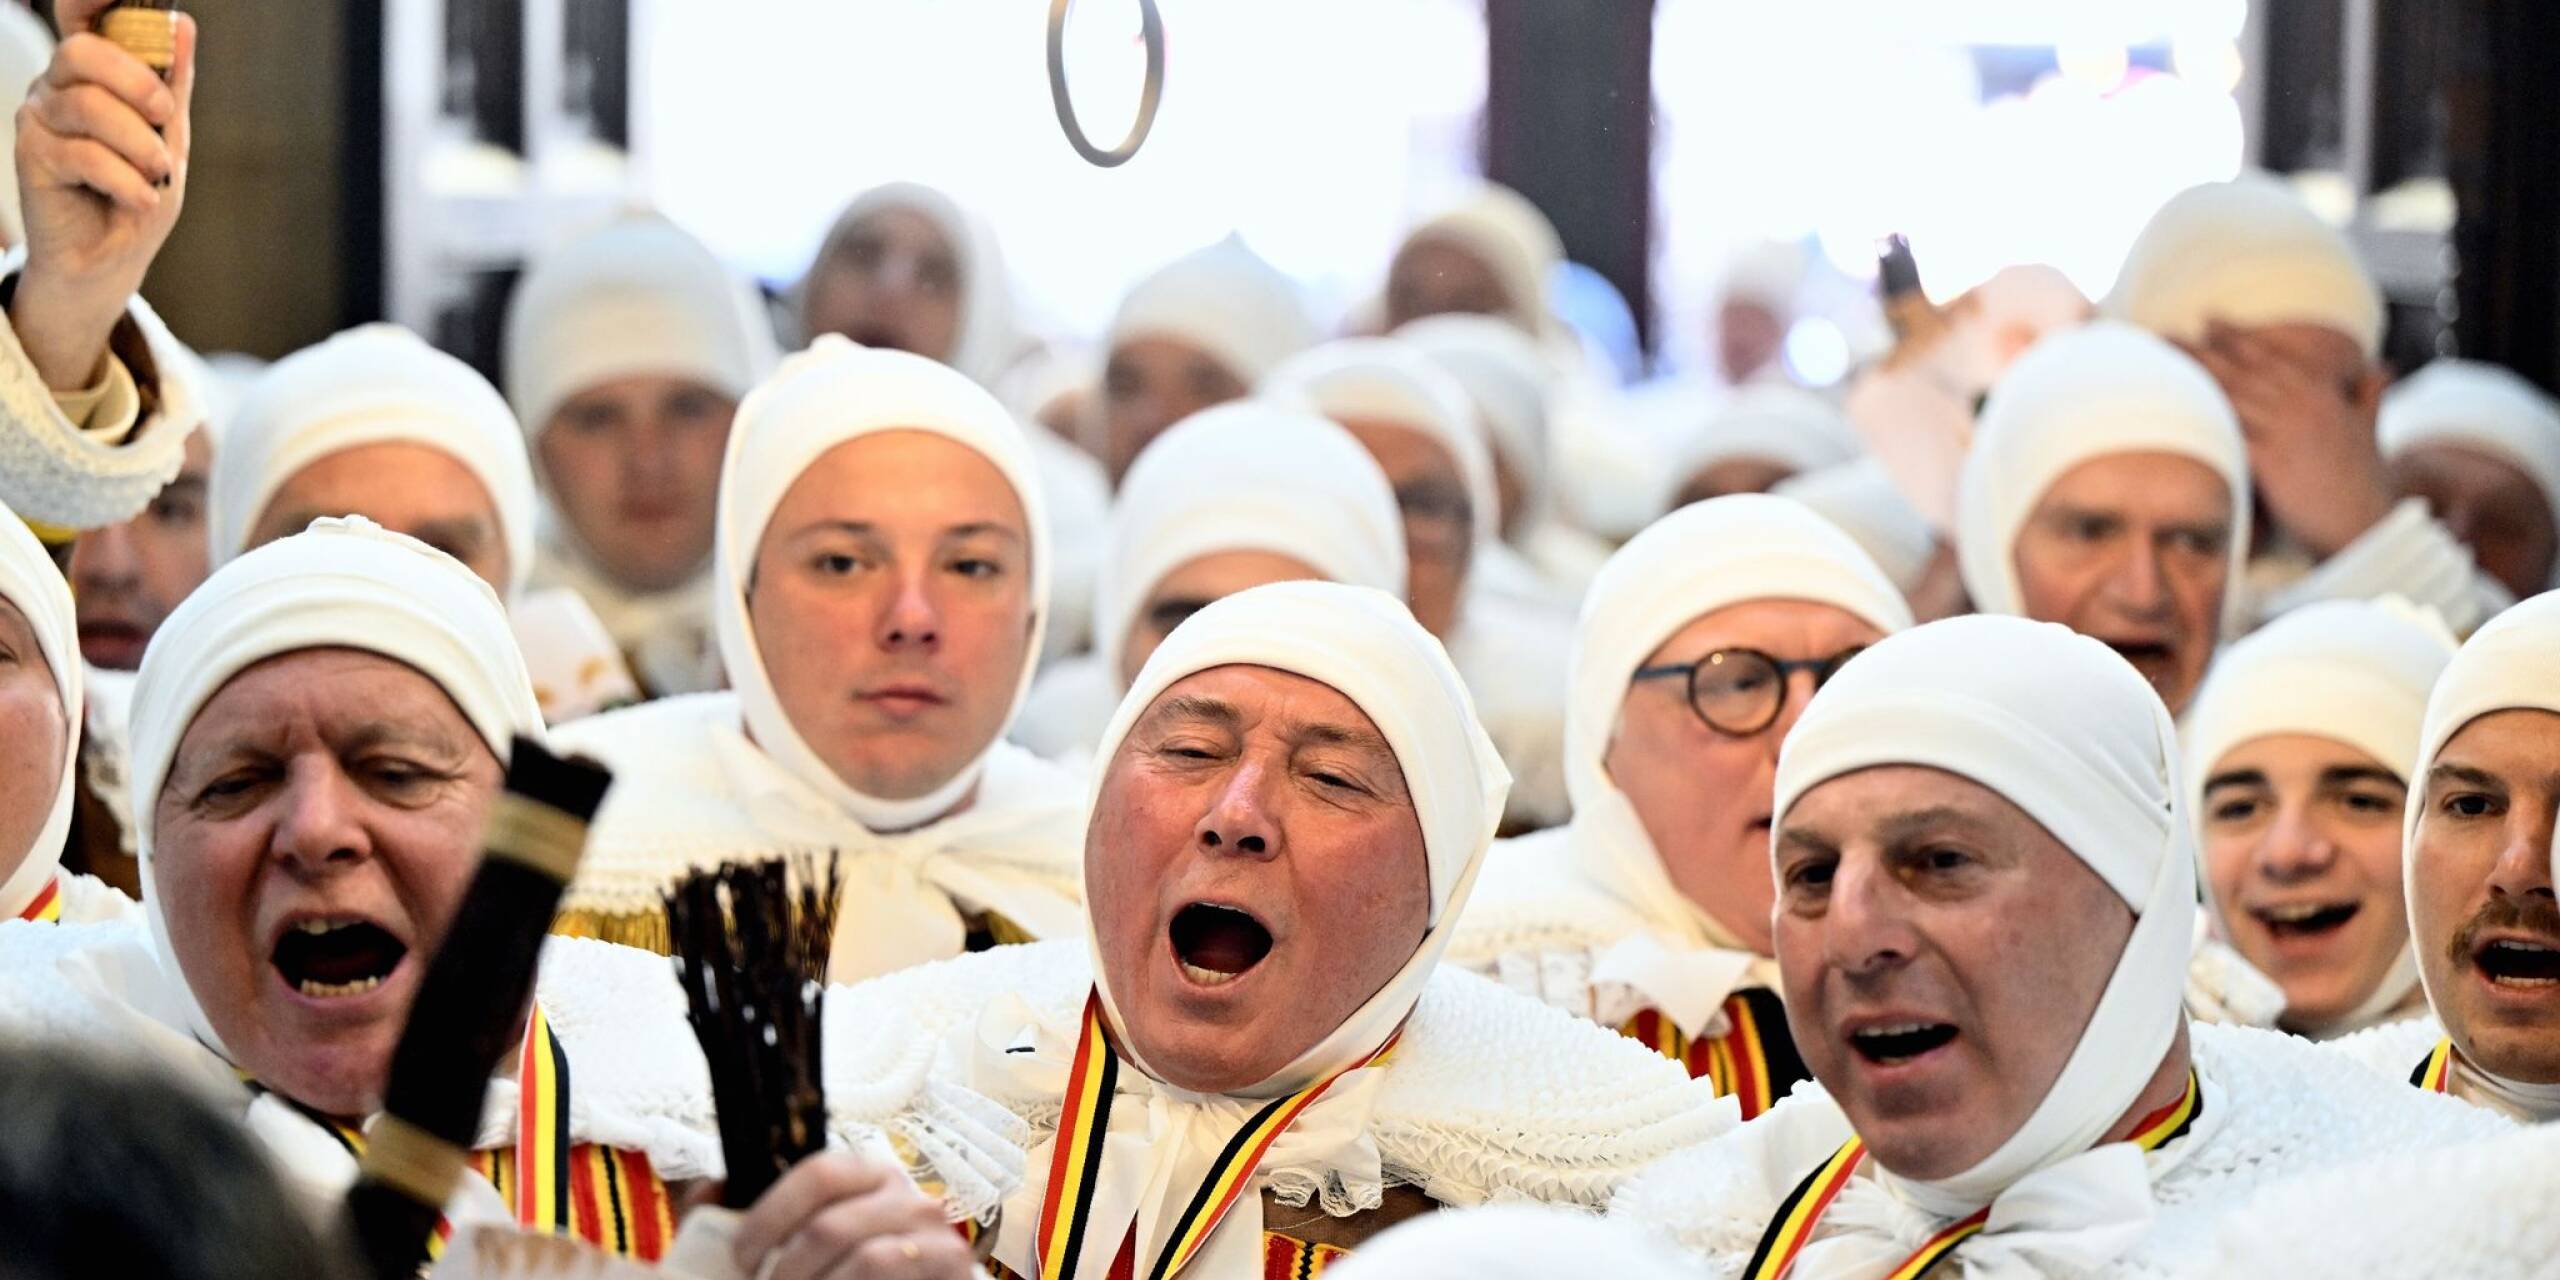 Karnevalsstimmung in Belgien: In der Stadt Binche feiern Menschen das traditionelle Fest auf den Straßen.